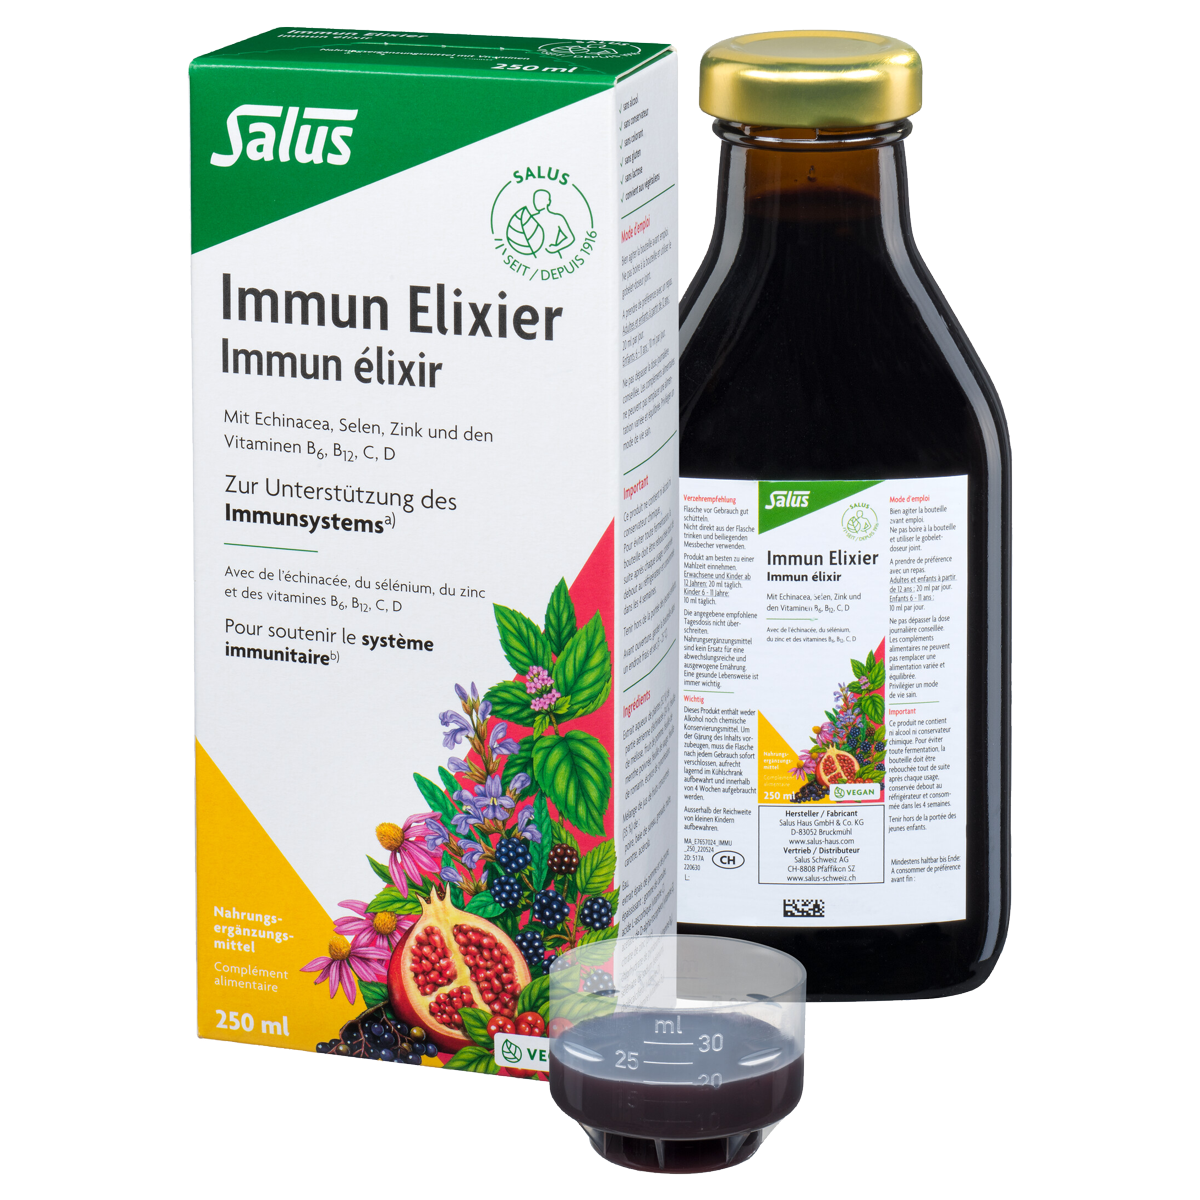 Salus Immun Elixier mit Echinacea, Selen, Zink und Vitamine